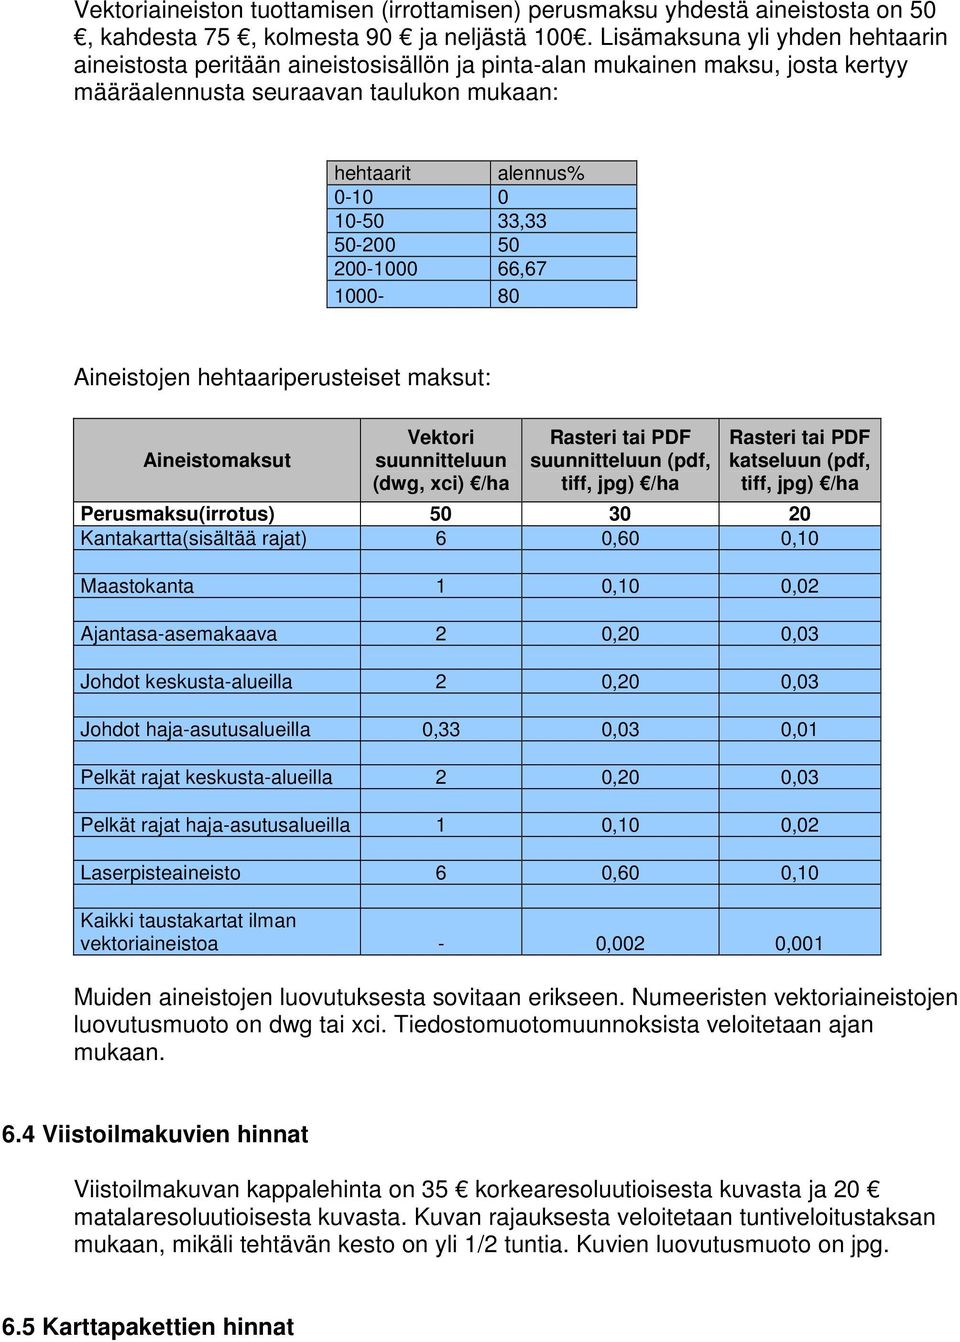 50 200-1000 66,67 1000-80 Aineistojen hehtaariperusteiset maksut: Aineistomaksut Vektori suunnitteluun (dwg, xci) /ha Rasteri tai PDF suunnitteluun (pdf, tiff, jpg) /ha Rasteri tai PDF katseluun